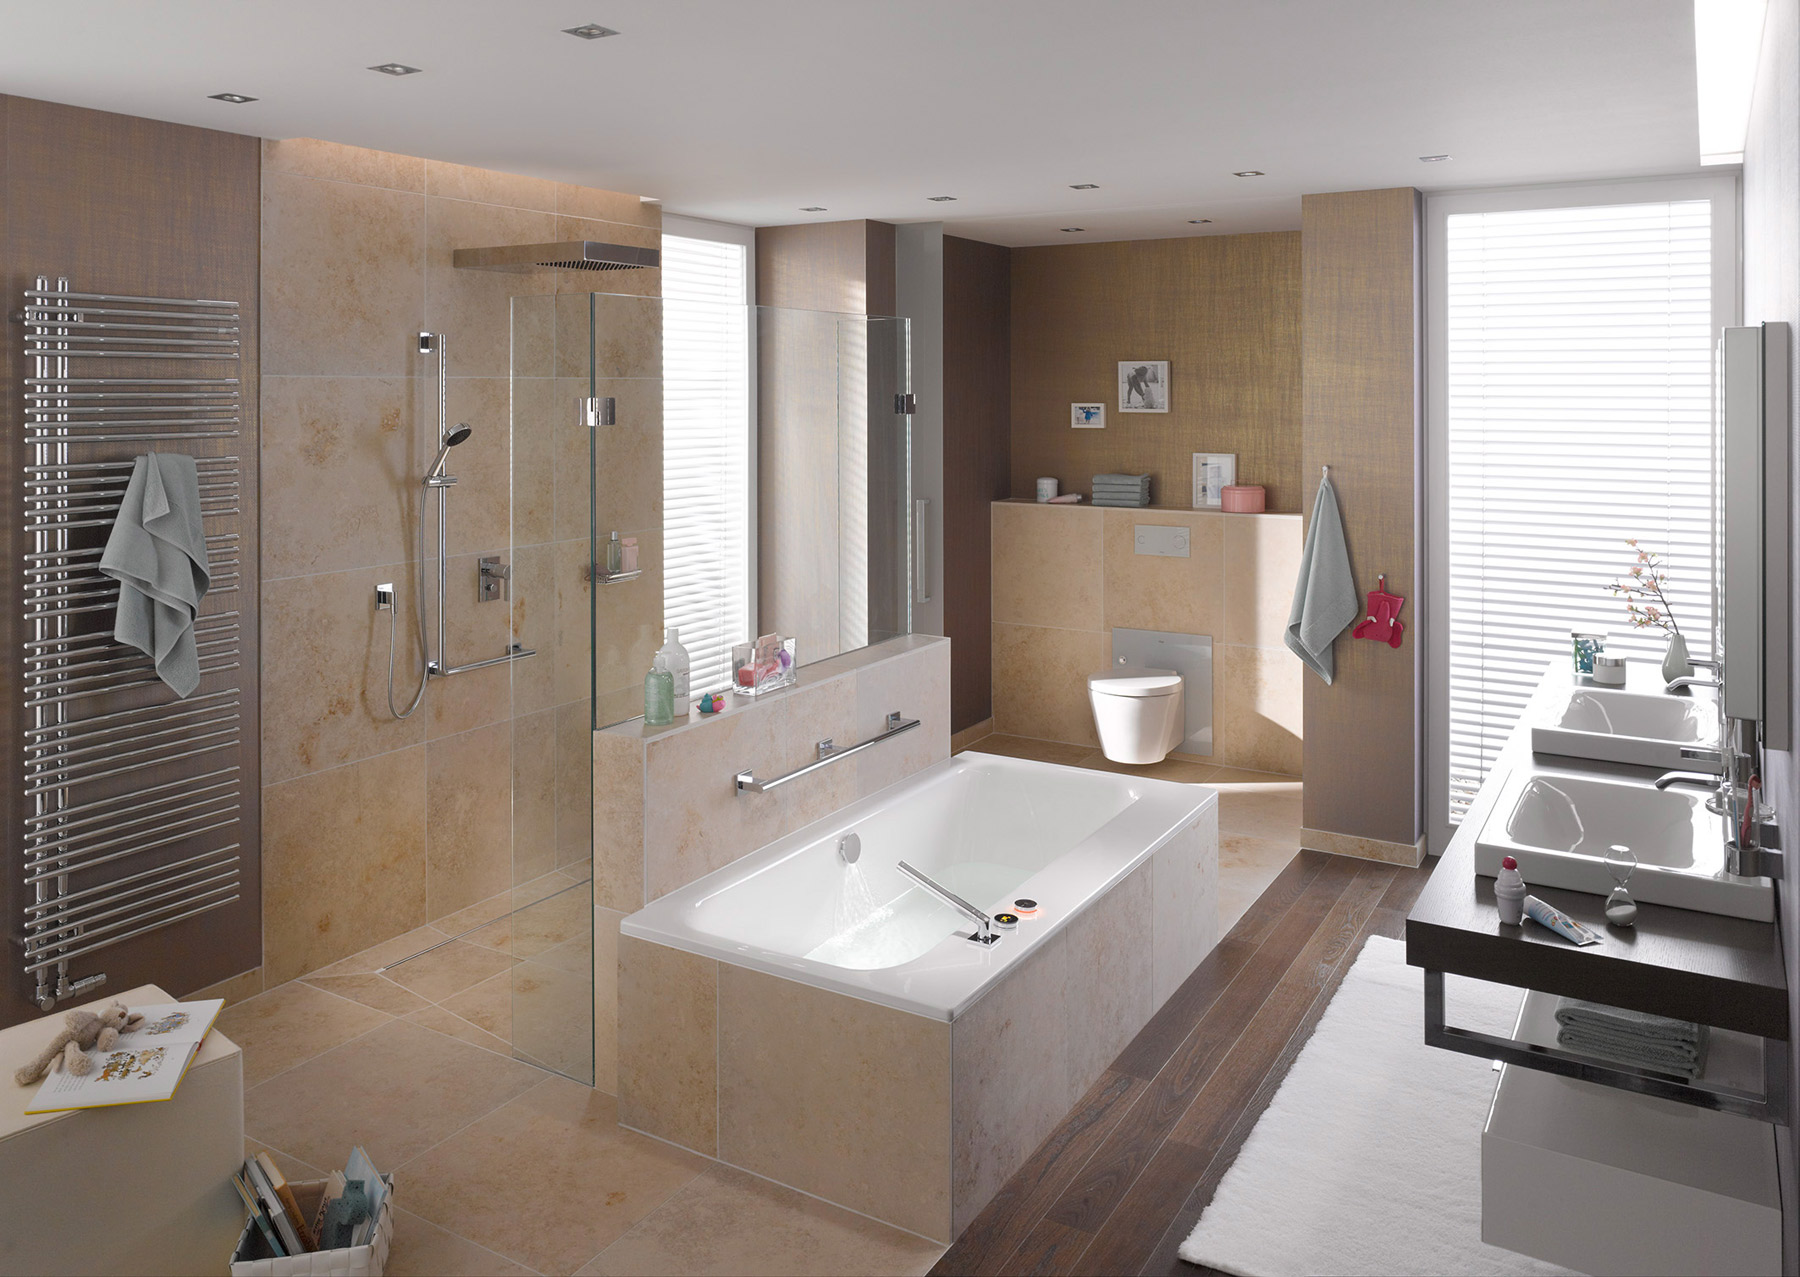 Koupelna jako relaxační zóna. Základem jsou jasné architektonické řešení a dostatek prostoru pro pohyb. (Foto: Viega)